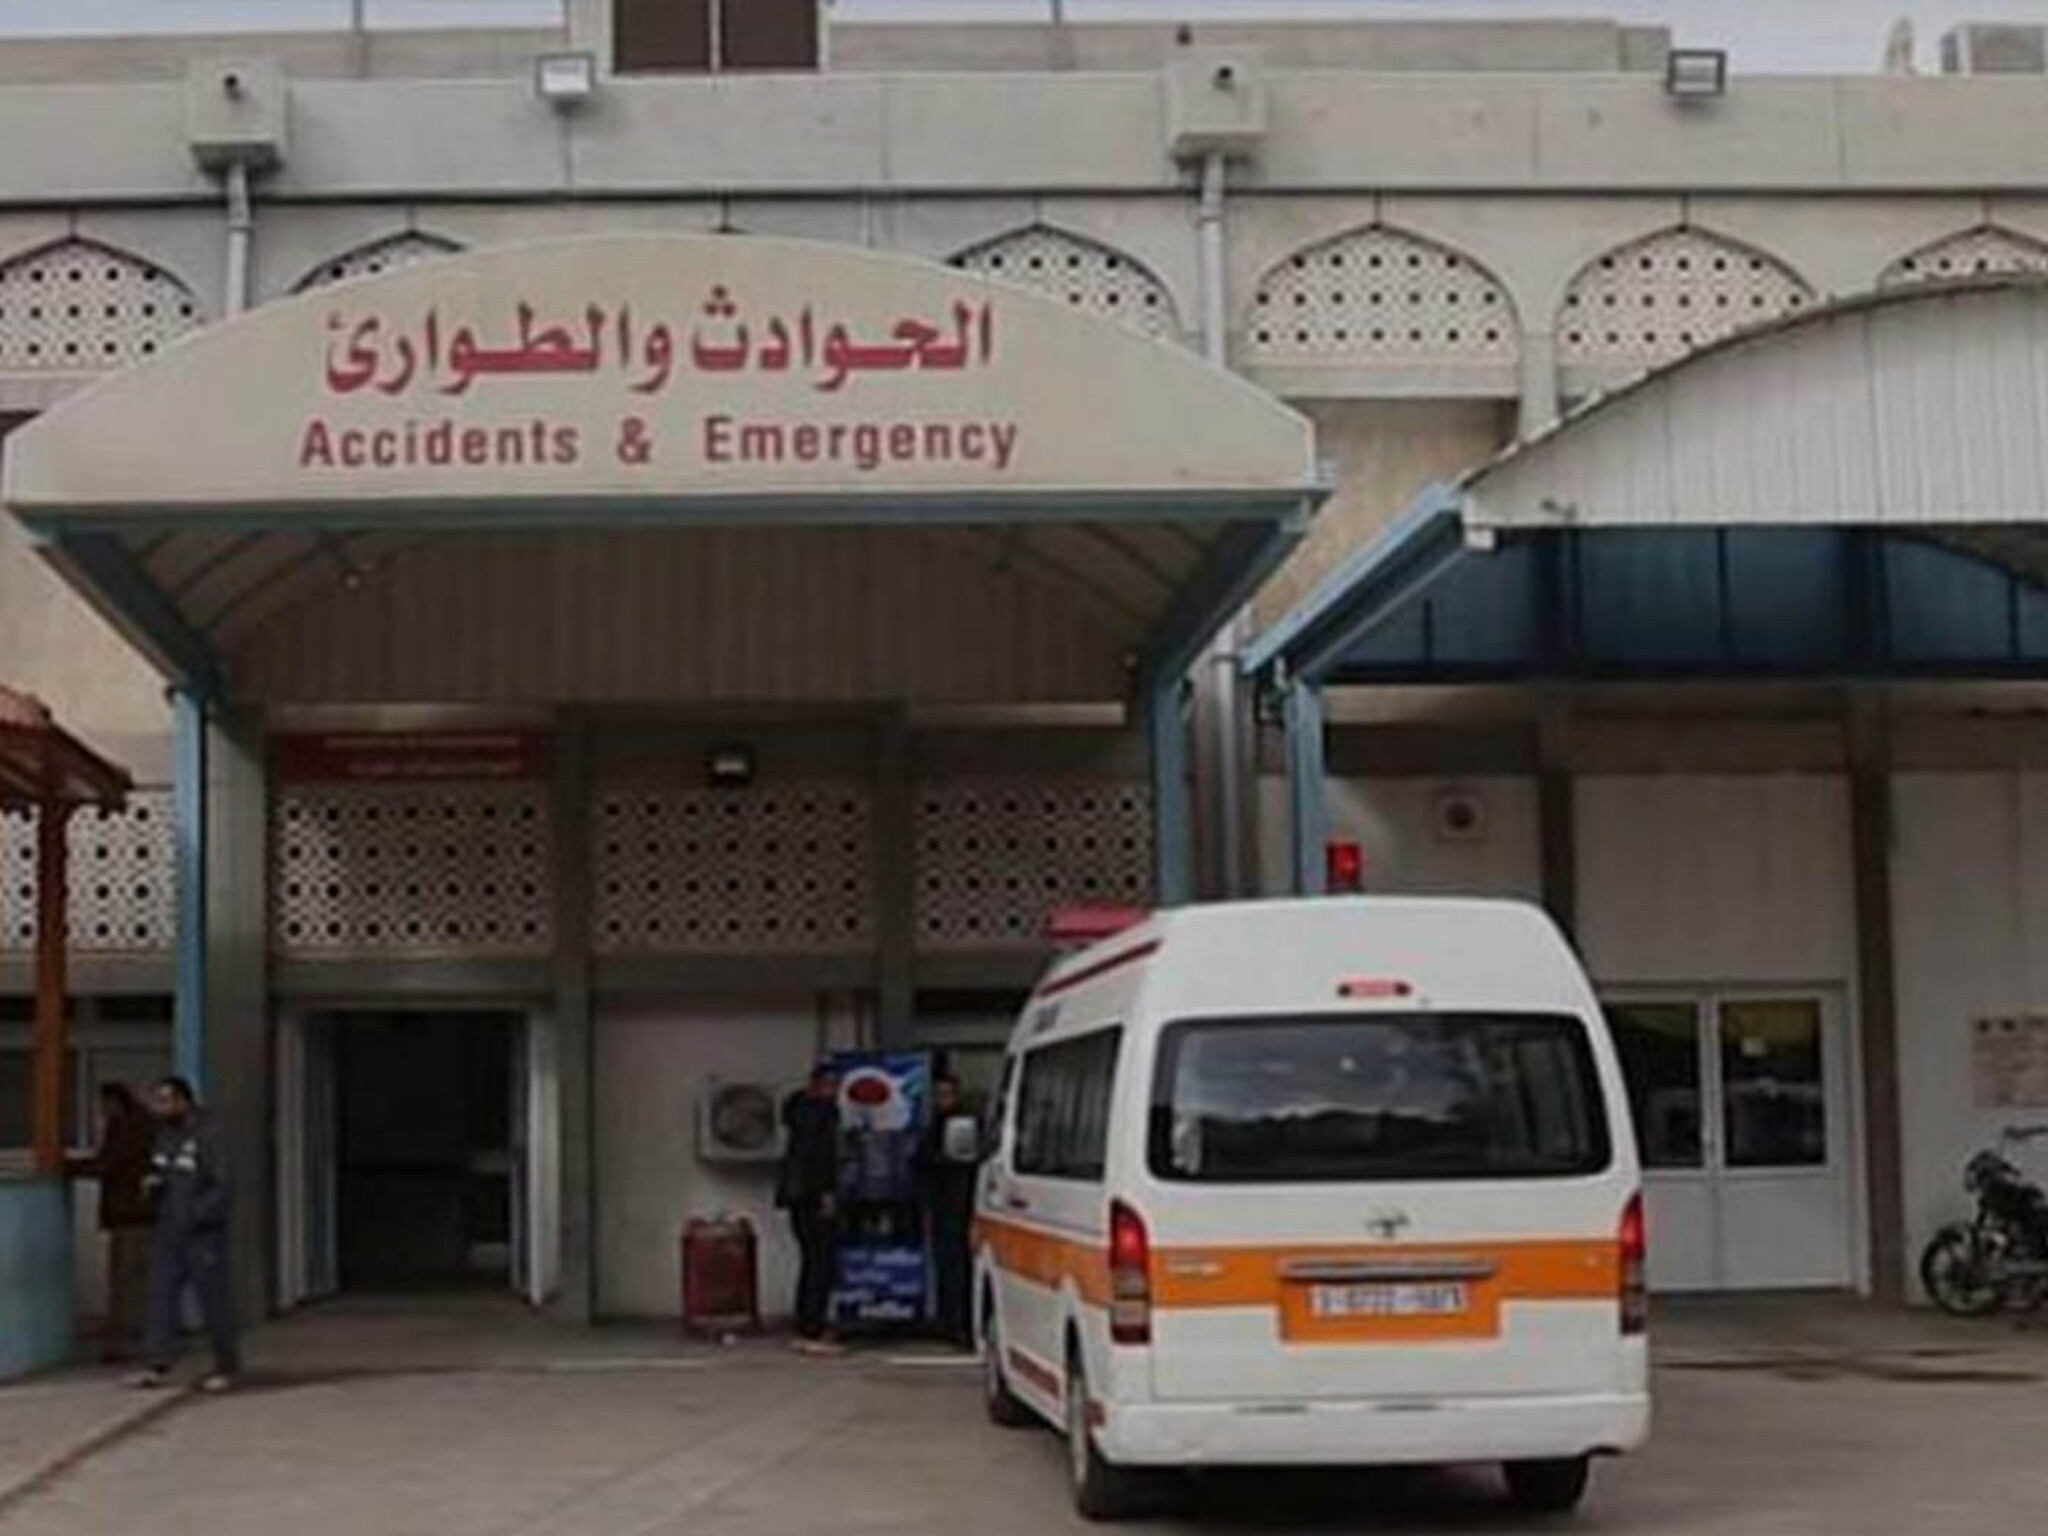 المستشفى الأوروبي في غزة...الأطباء والممرضون يعيشون تحديات استثنائية